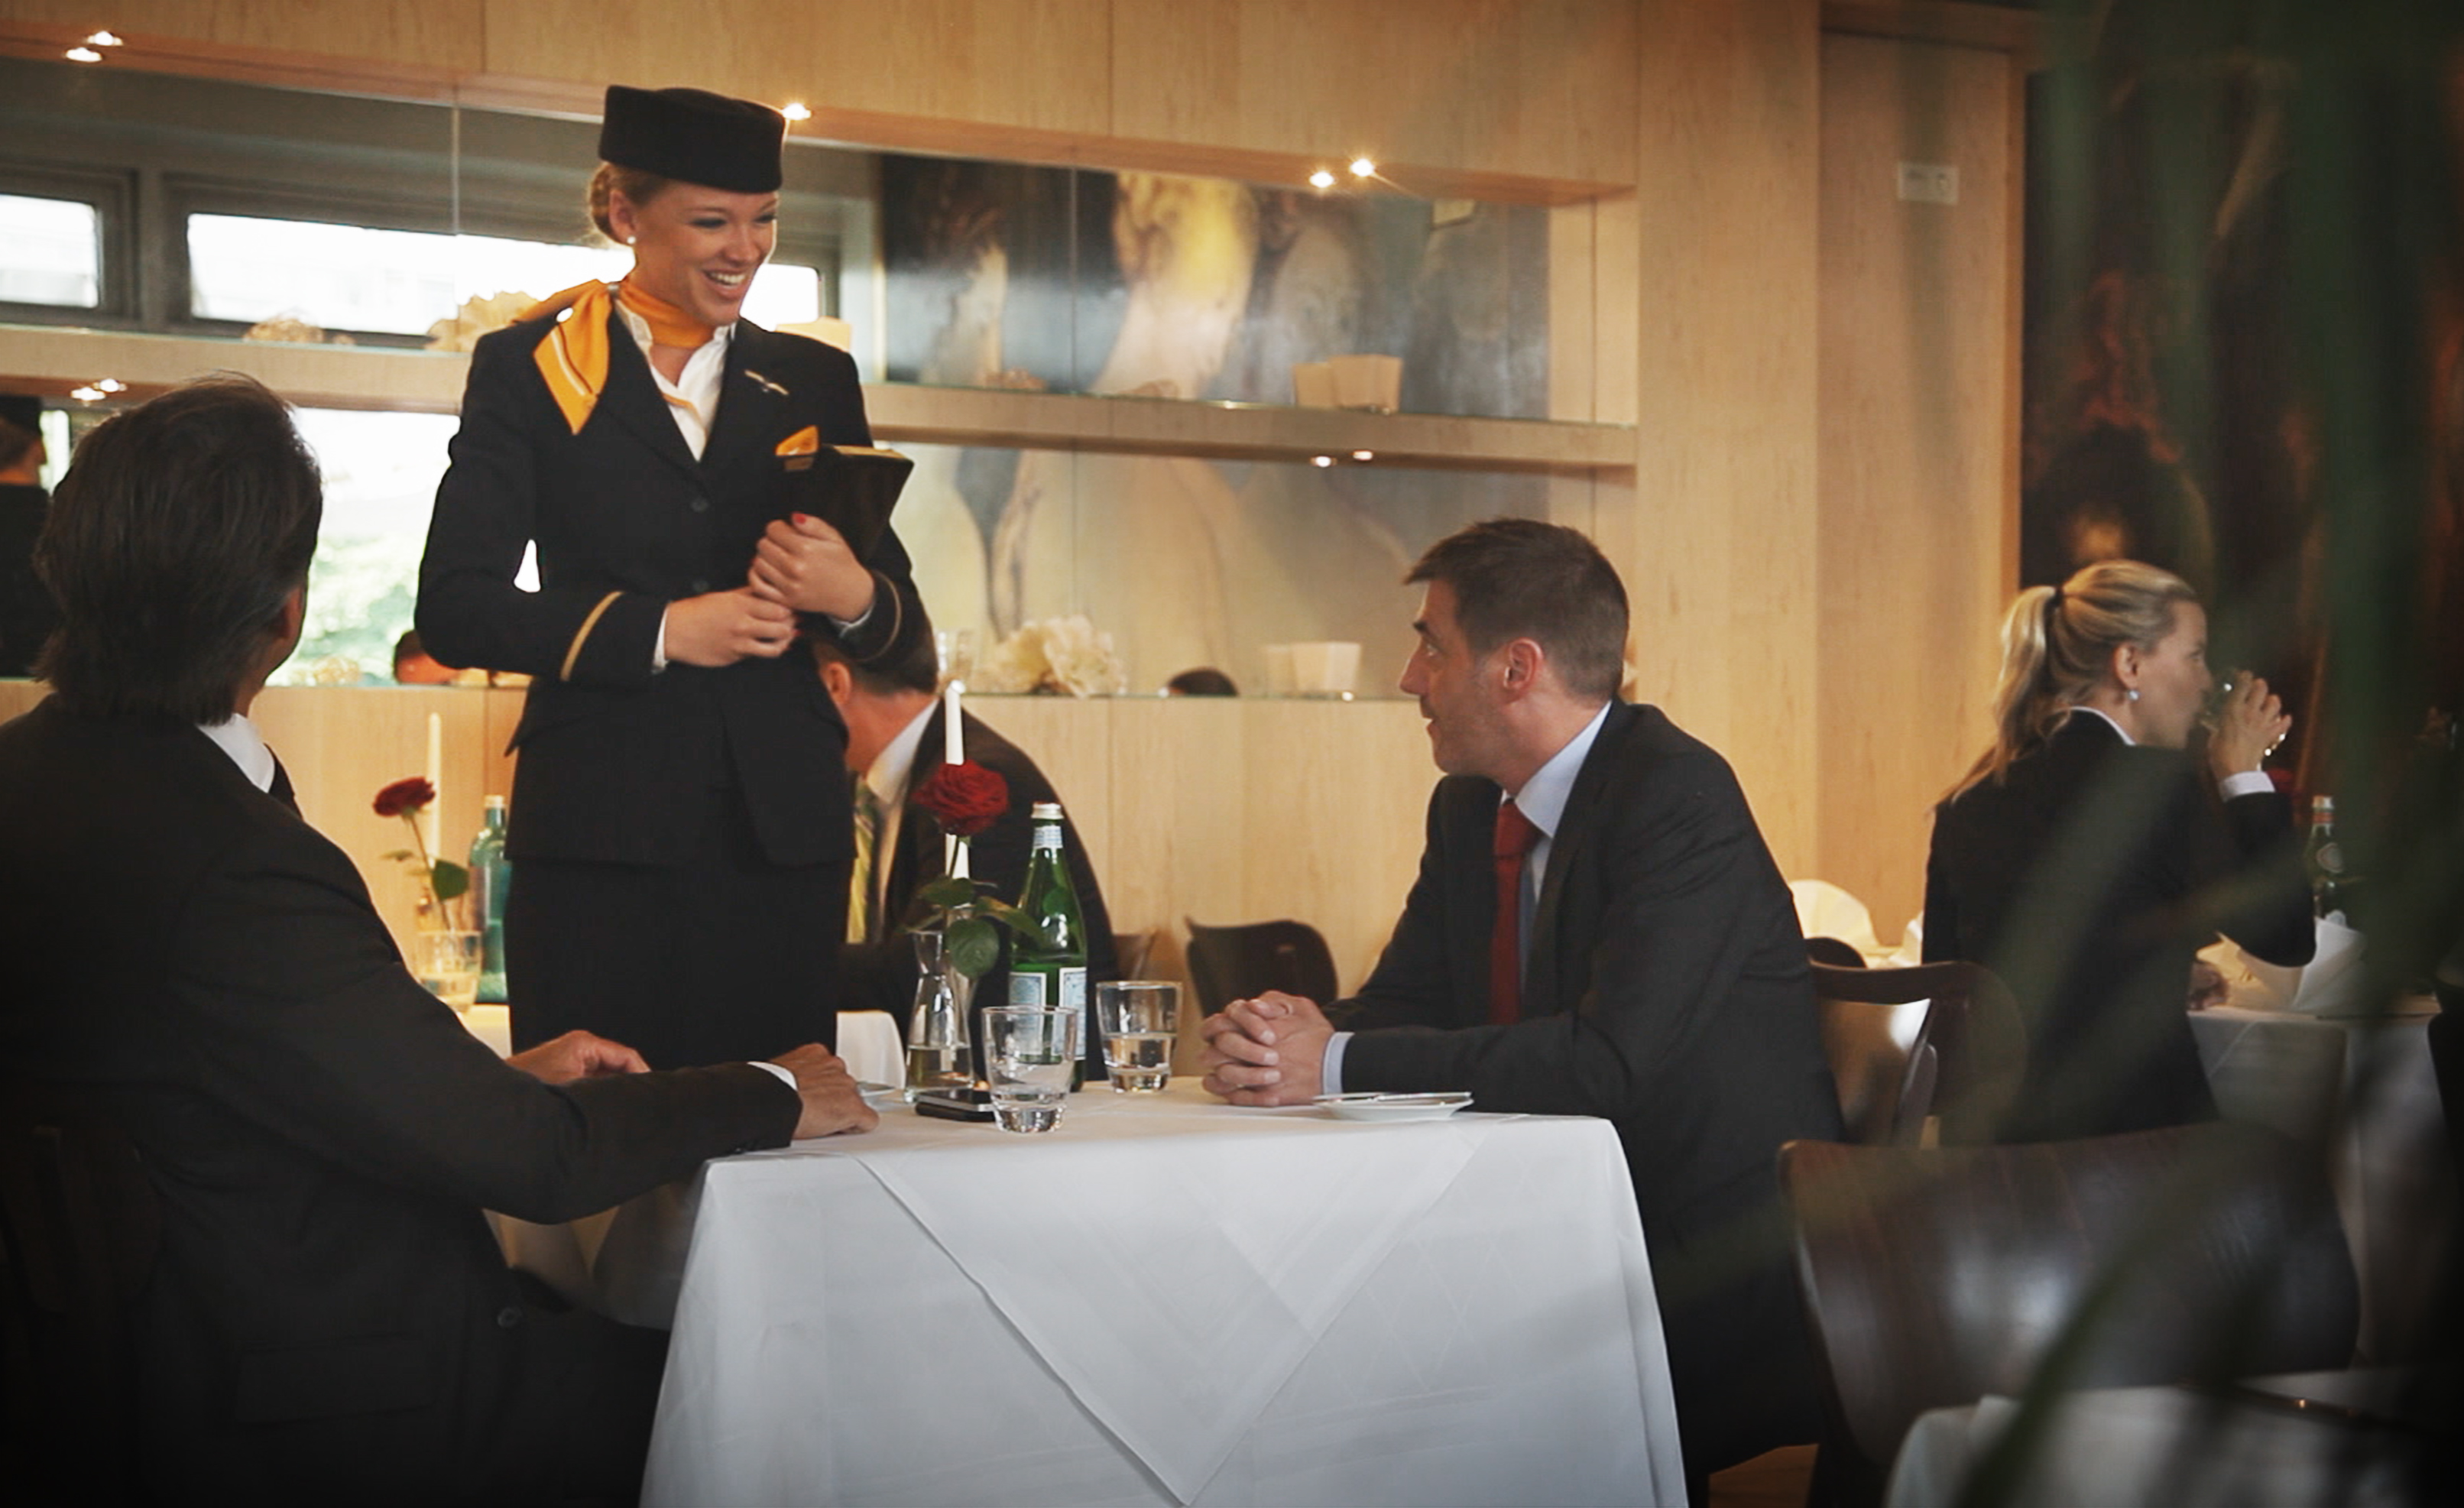 Punktlandung auf dem Teller: Lufthansa lädt zum Überraschungs-Lunch - Video bei HOTELIER TV